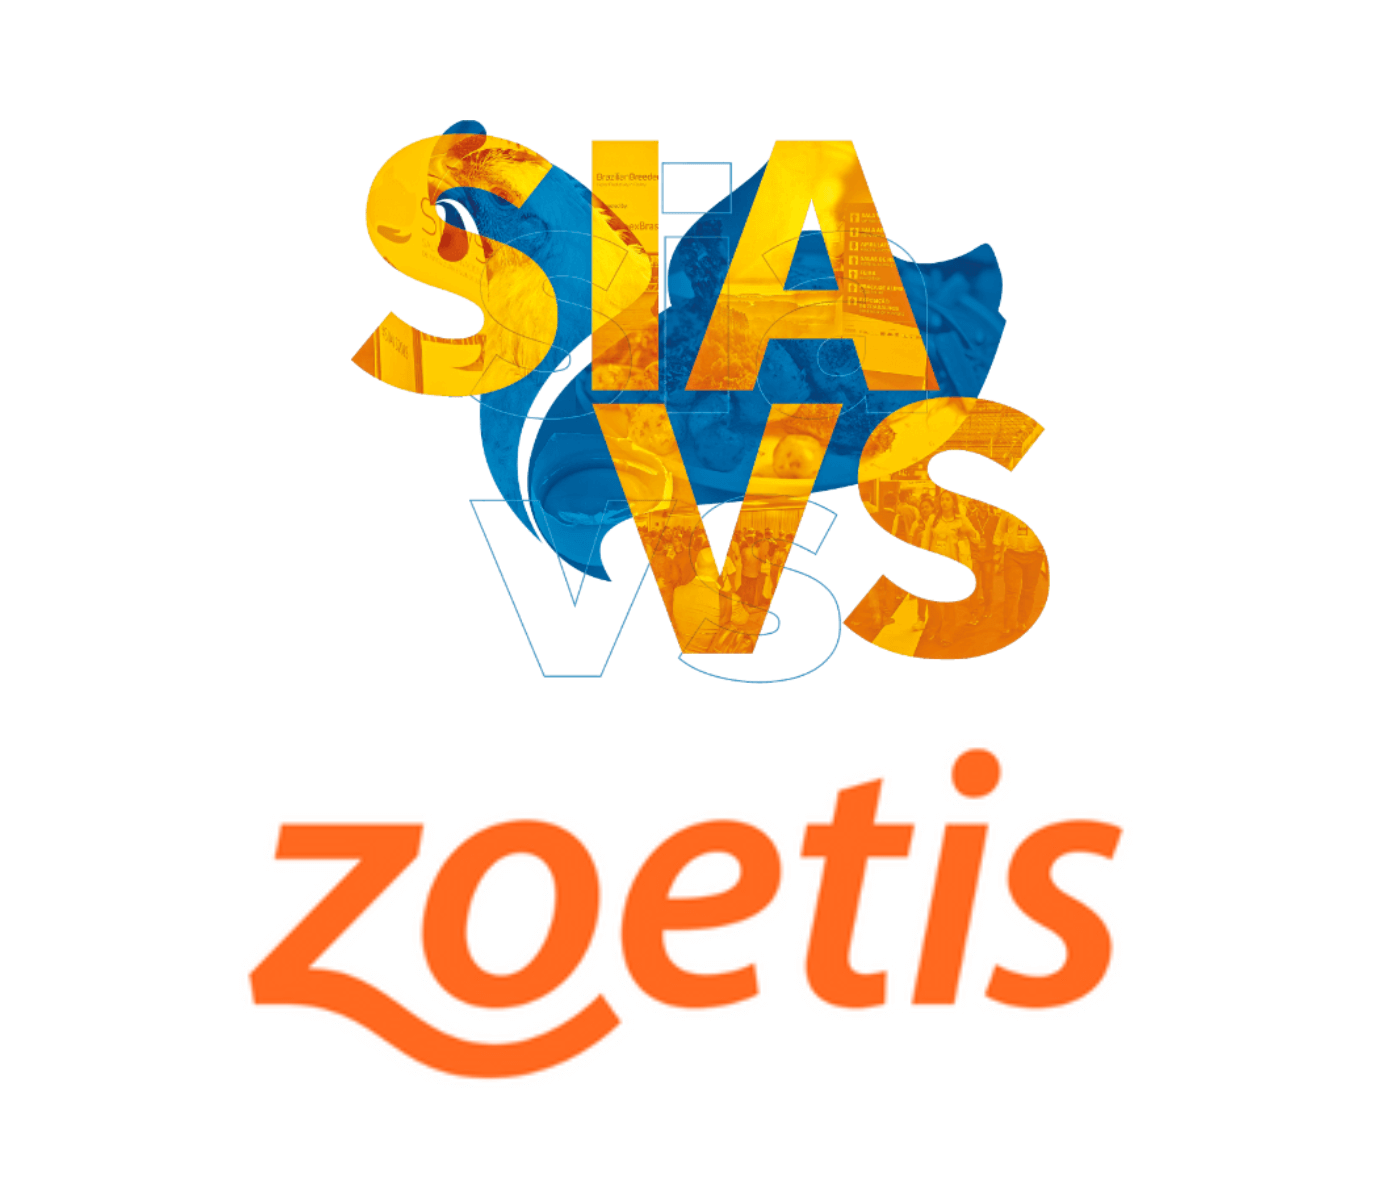 Zoetis aborda inovação no SIAVS